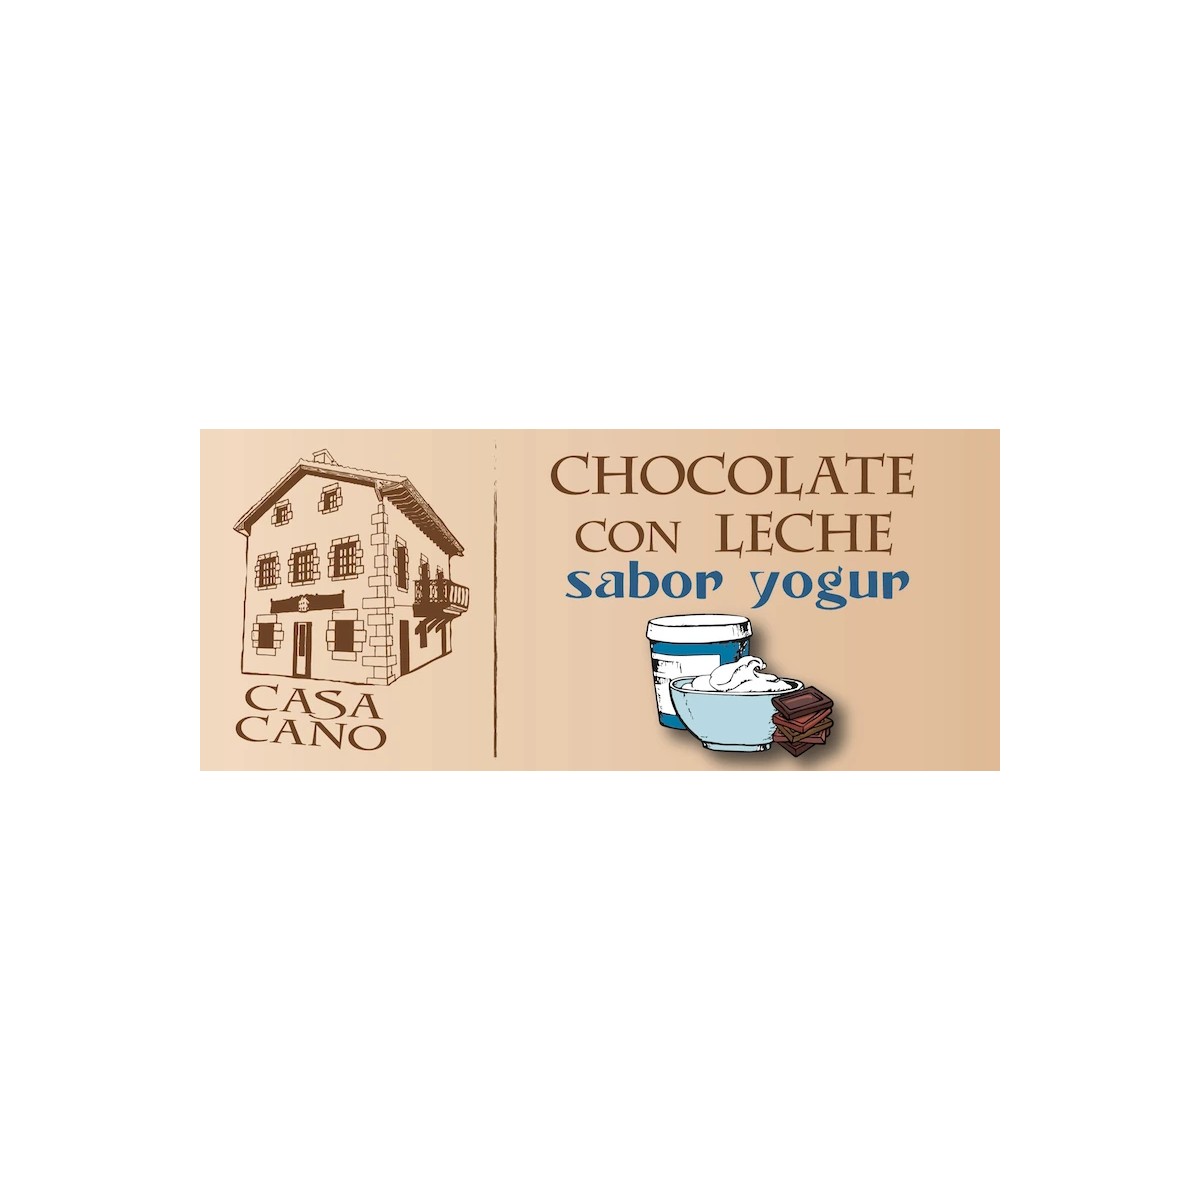 Comprar chocolate con leche sabor yogur casa cano